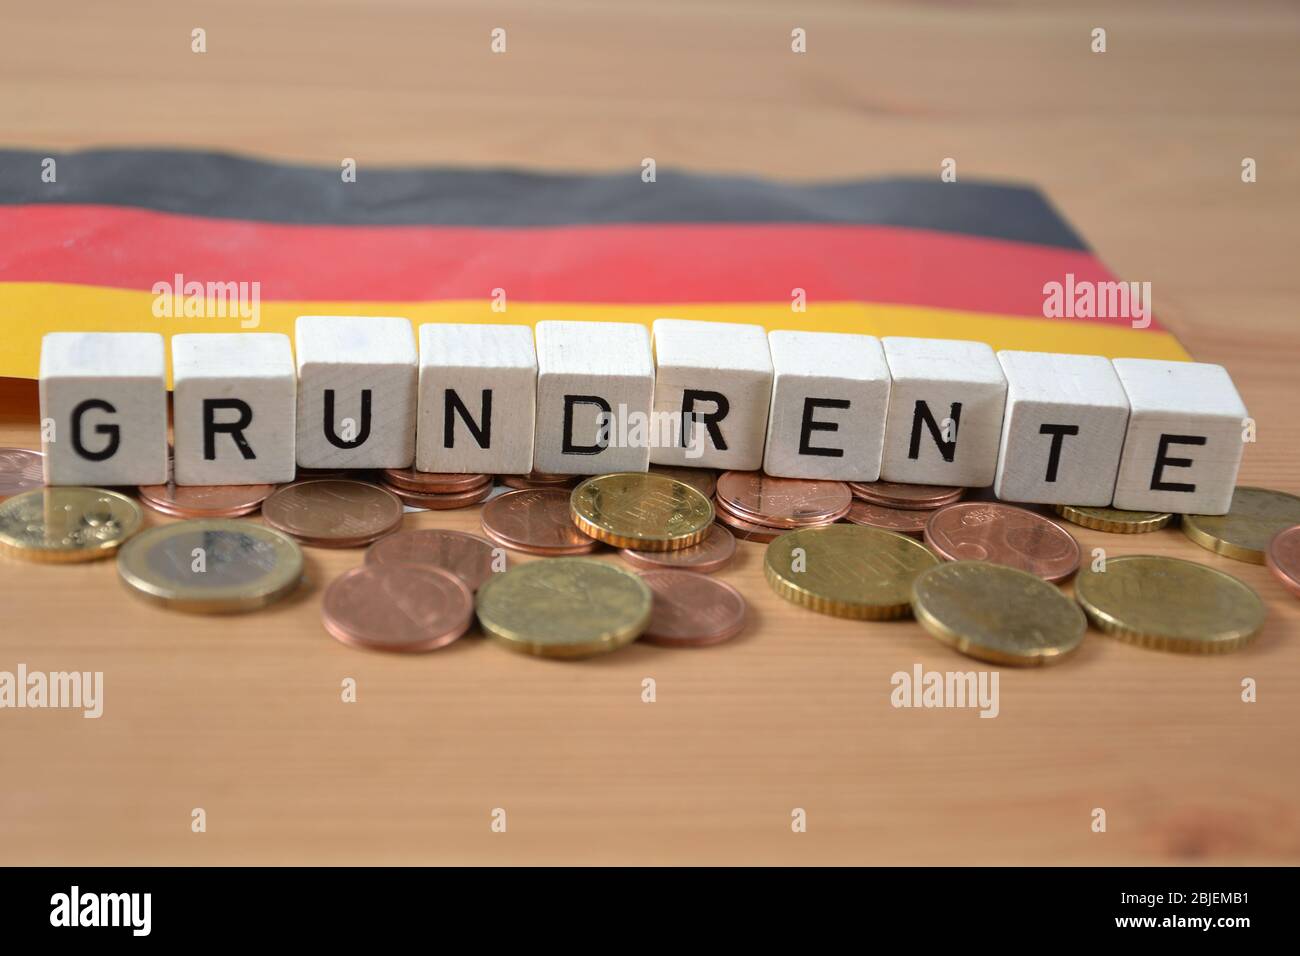 Grundrente - la parola tedesca per la pensione di base Foto Stock